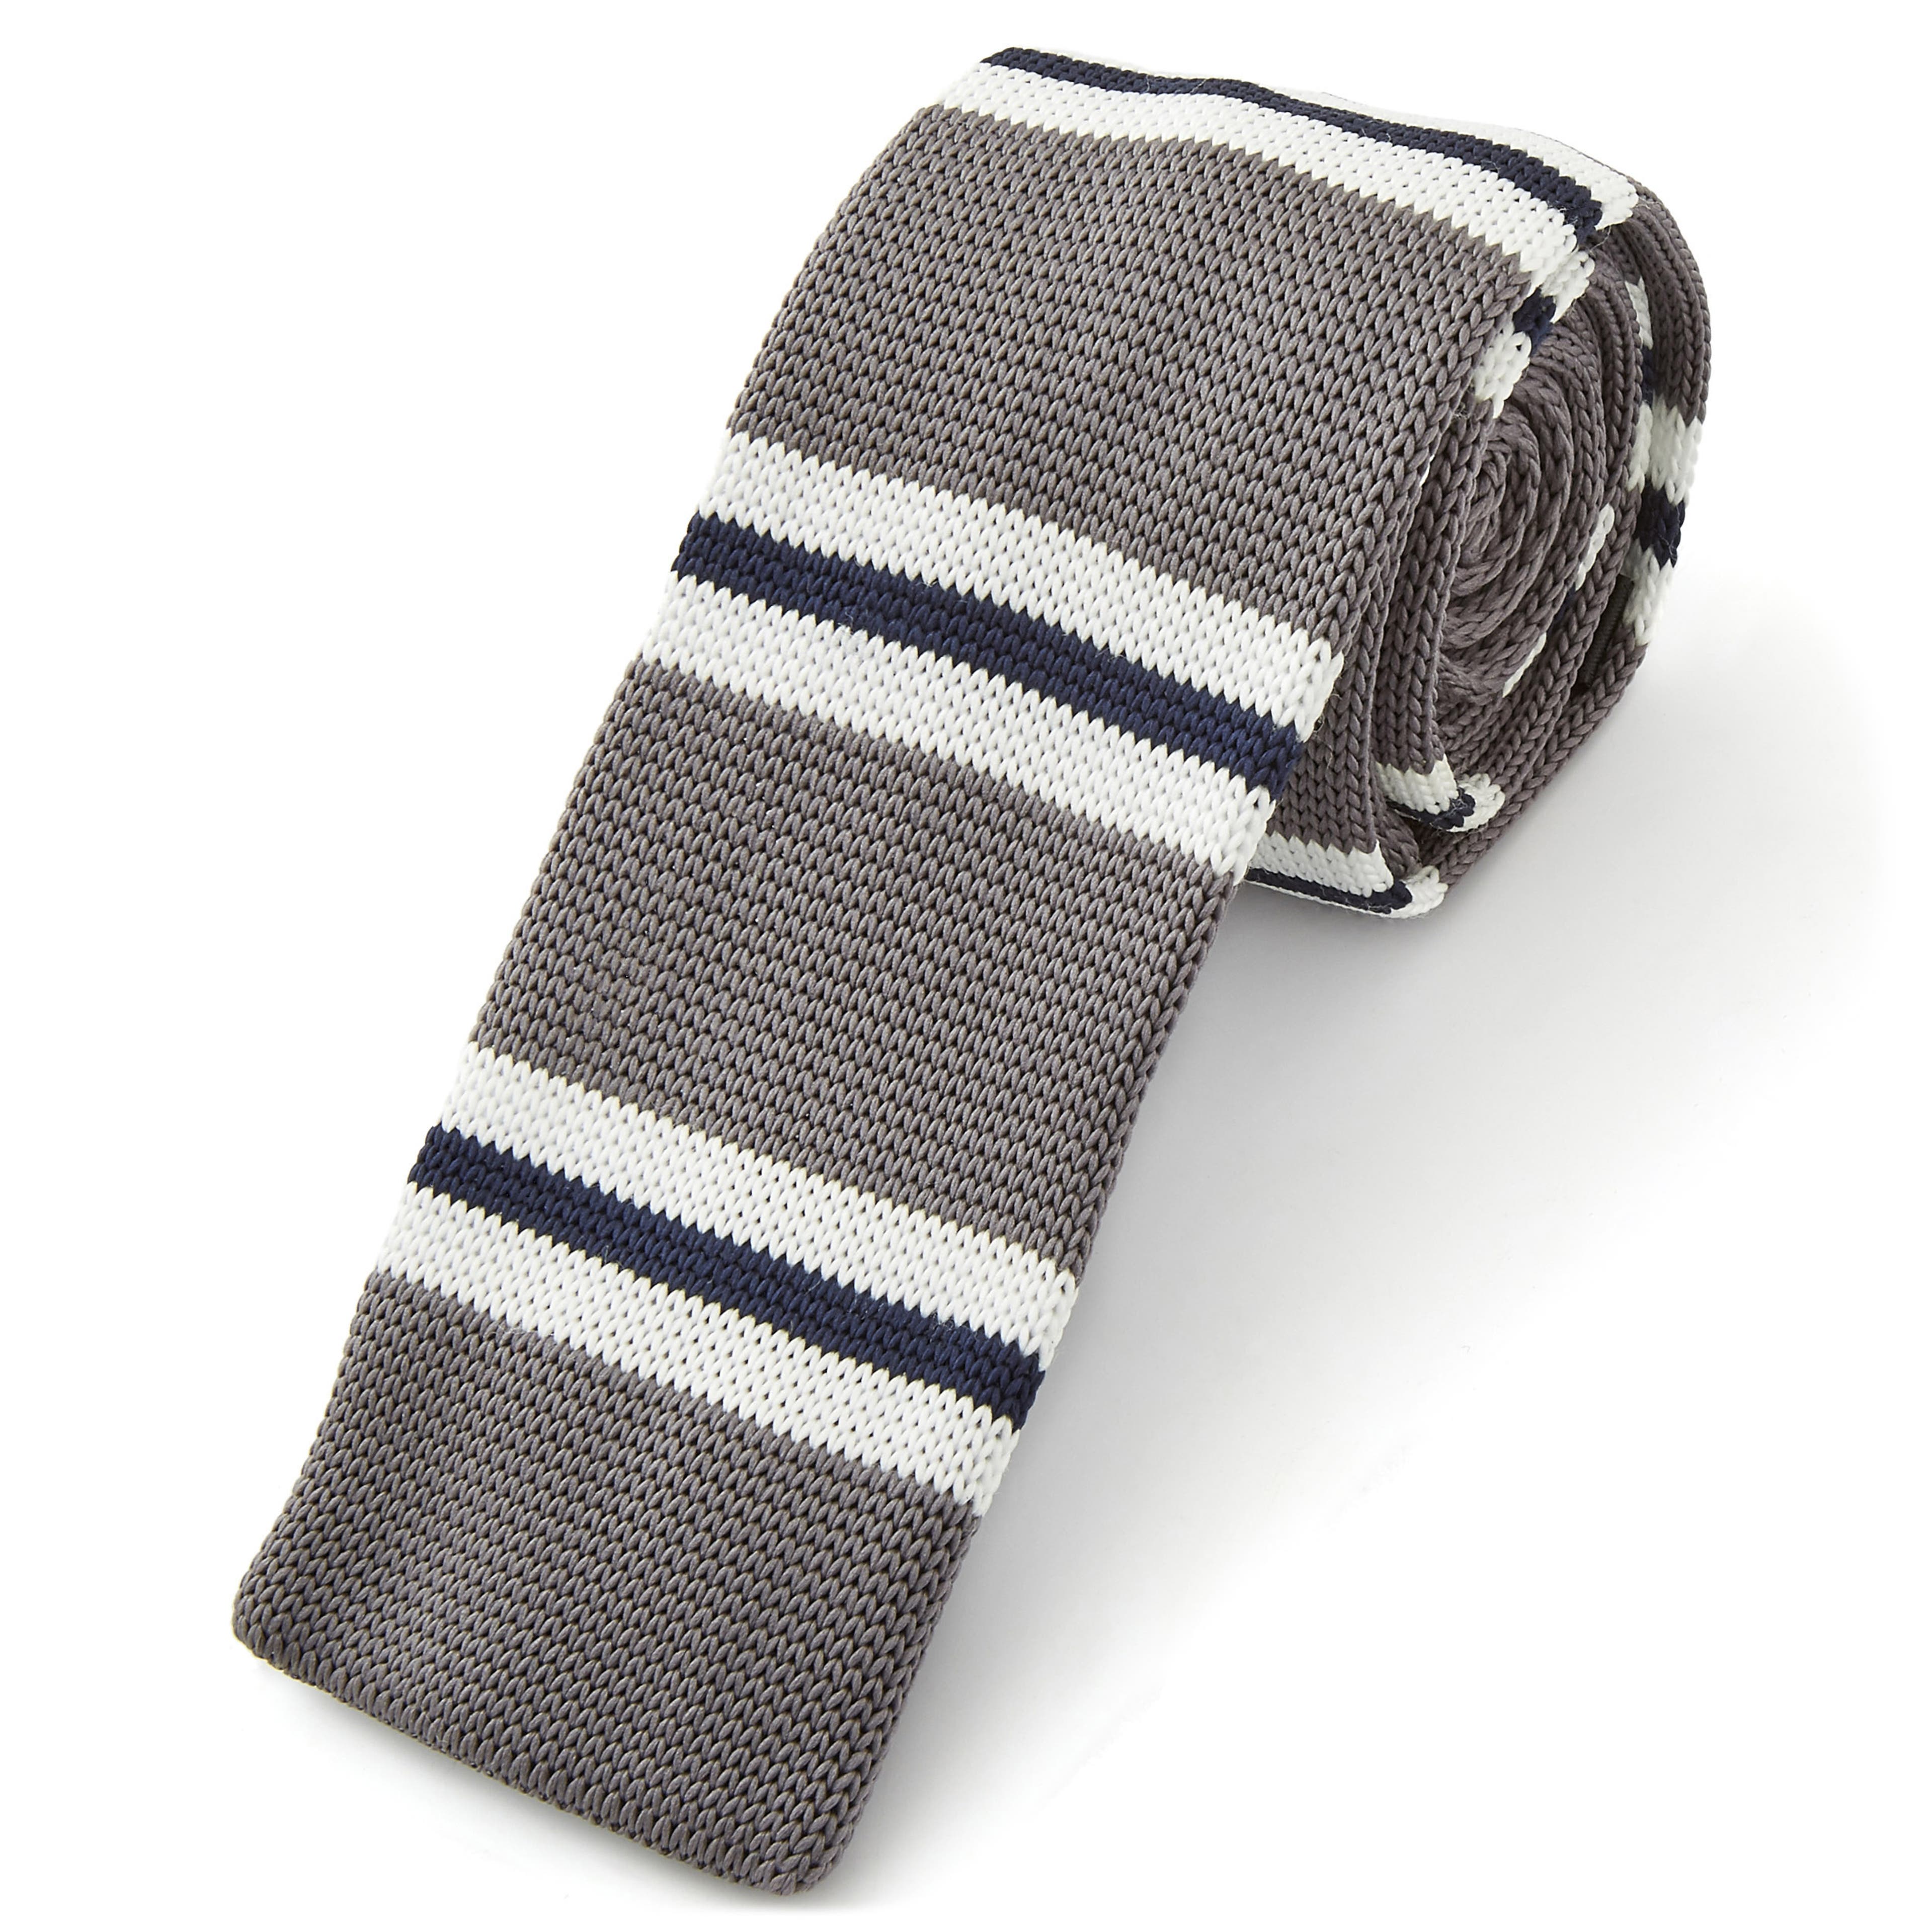 Cravate grise et bleue tricotée